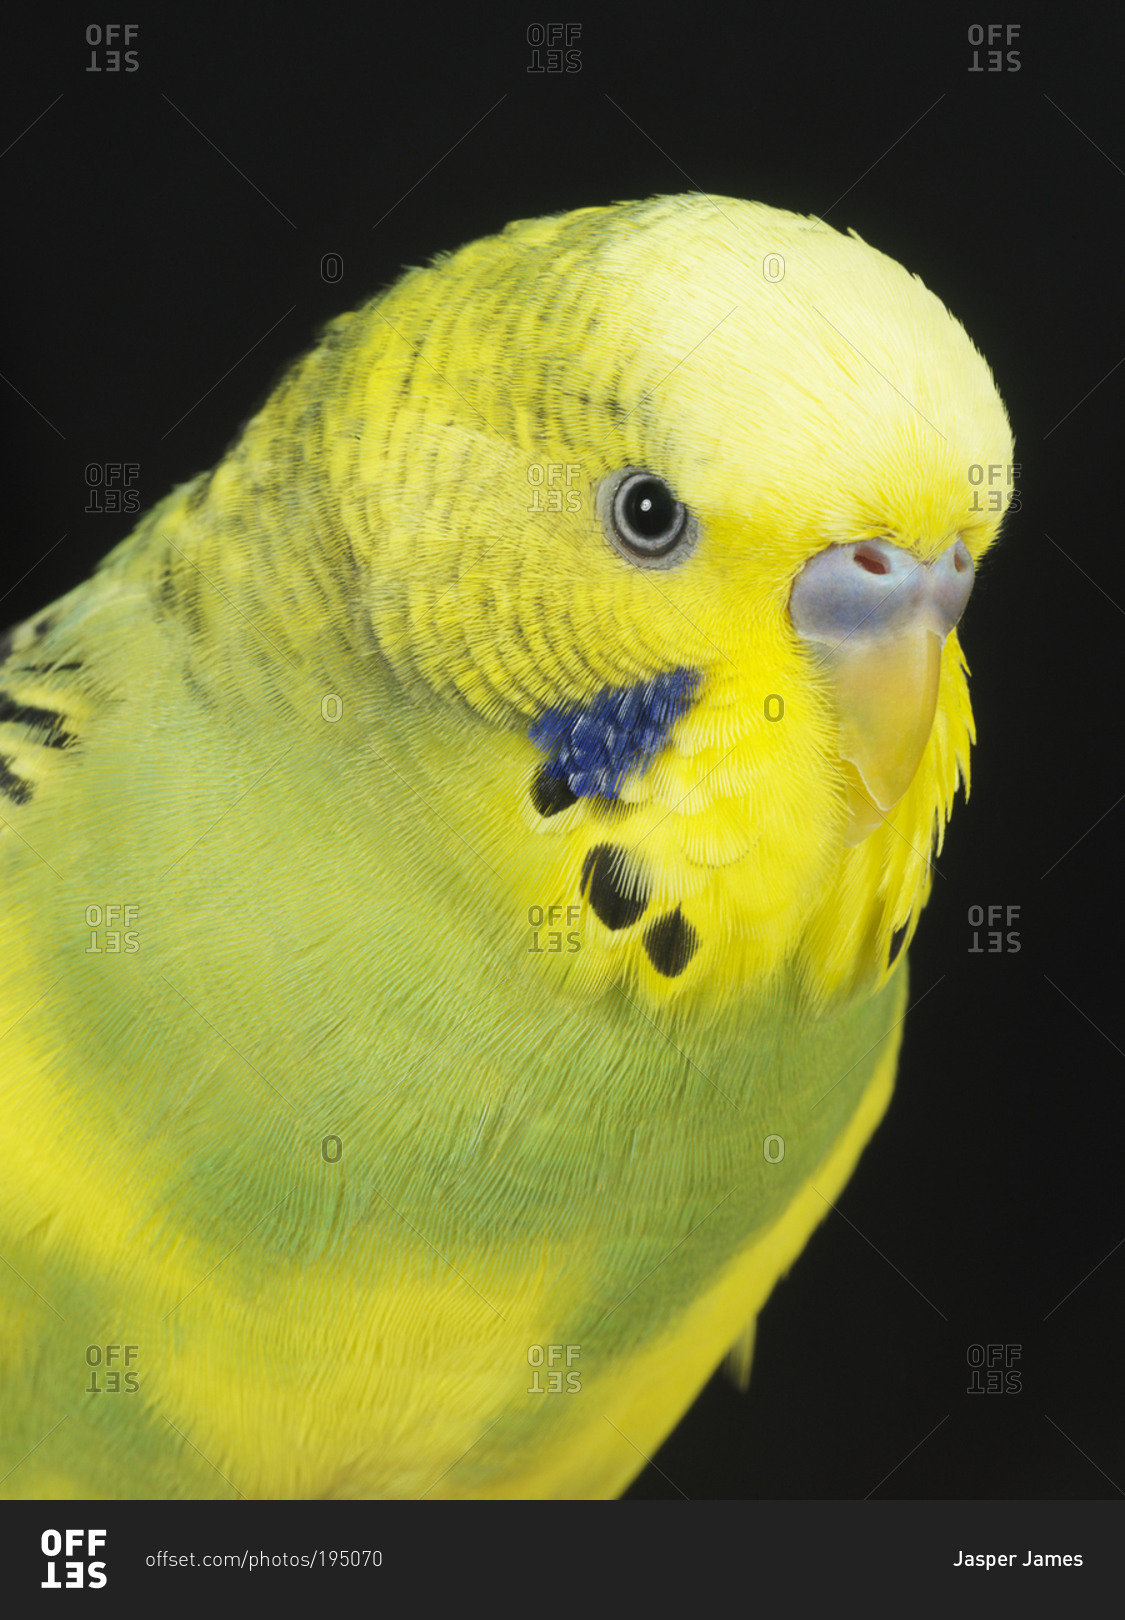 A yellow parakeet